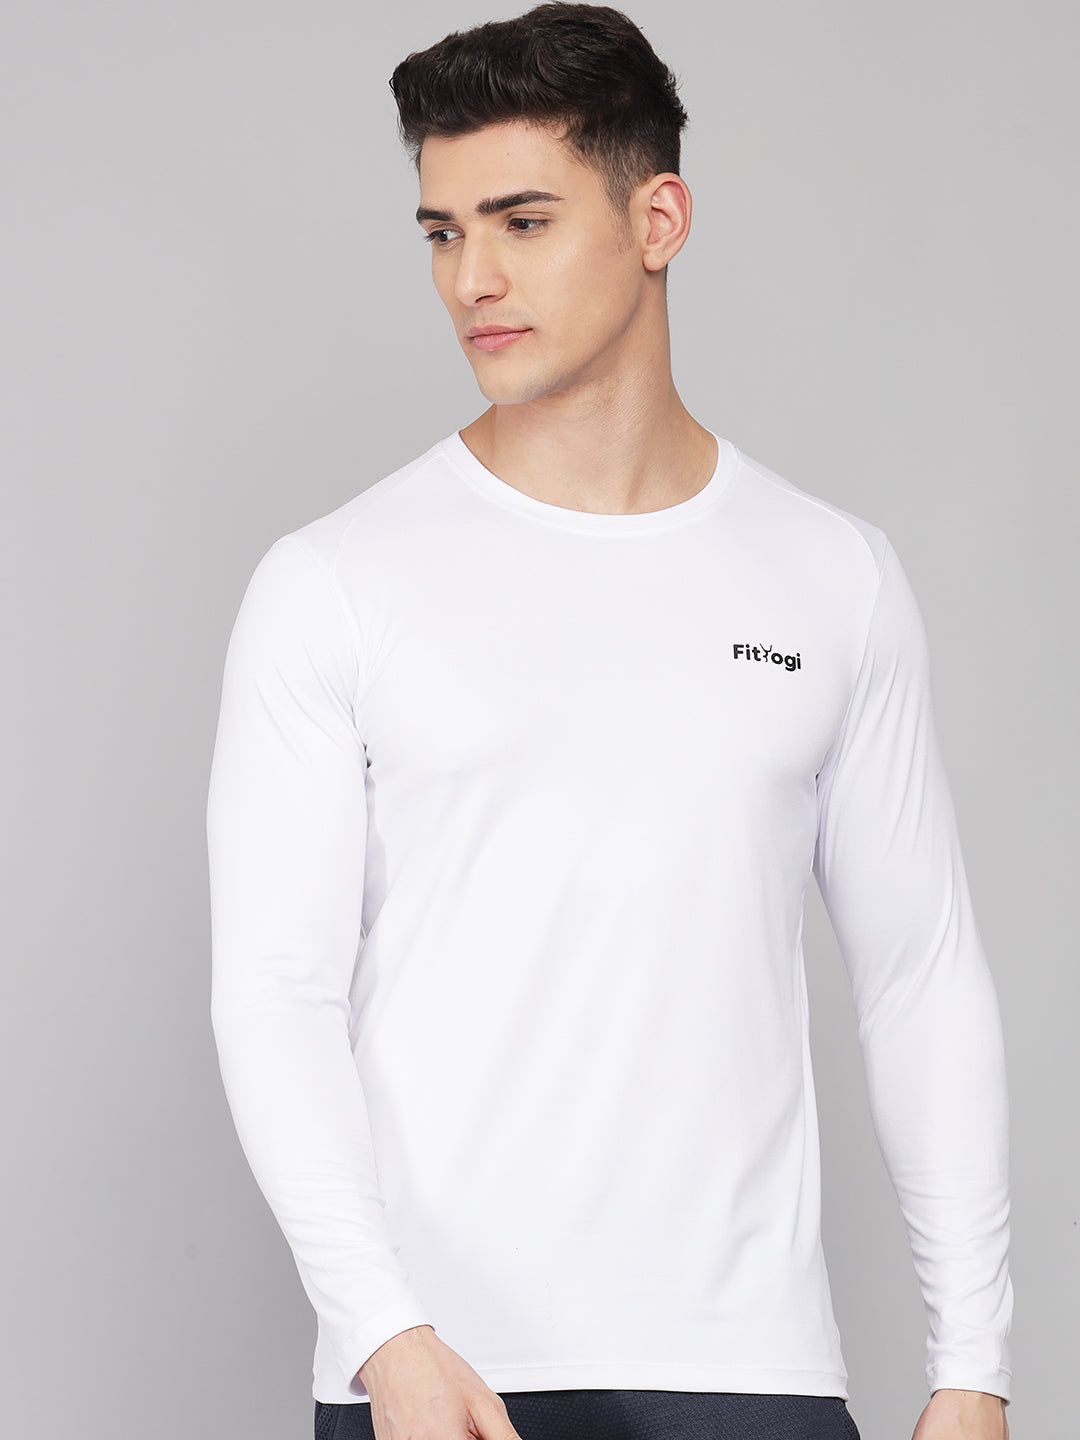 FitYogi Mens Full Sleeve White T-shirt